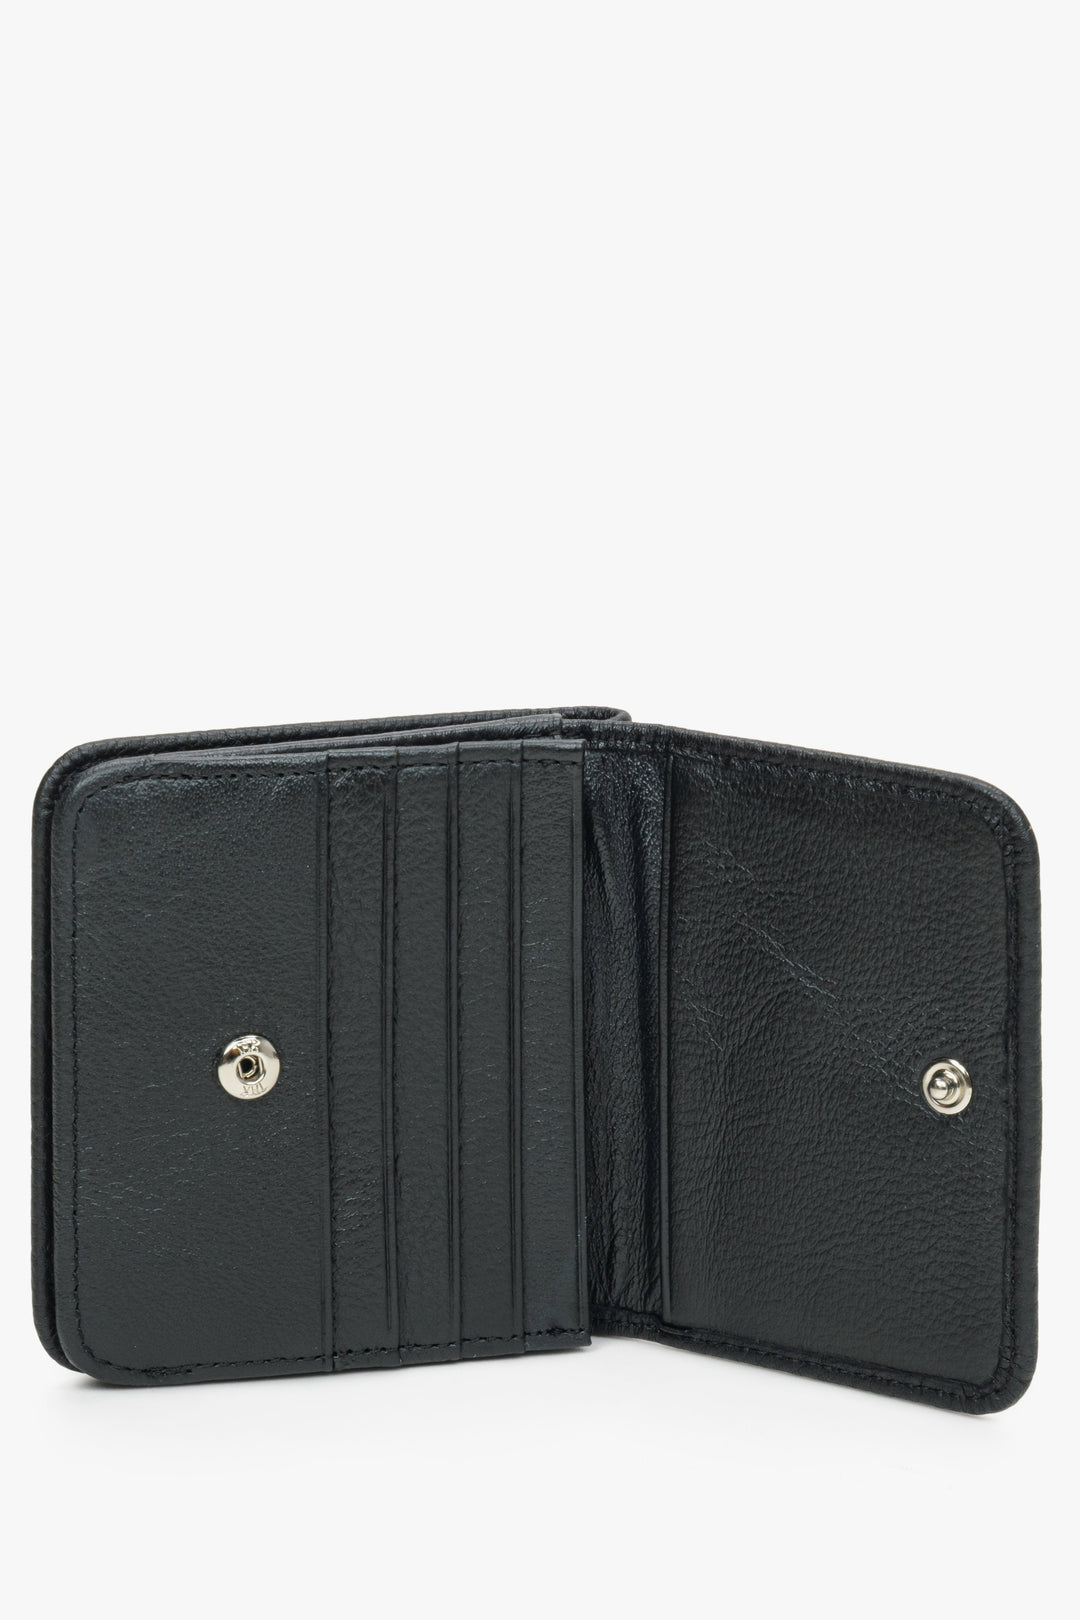 Compact men's wallet - Estro billfold in black - interior presentation.